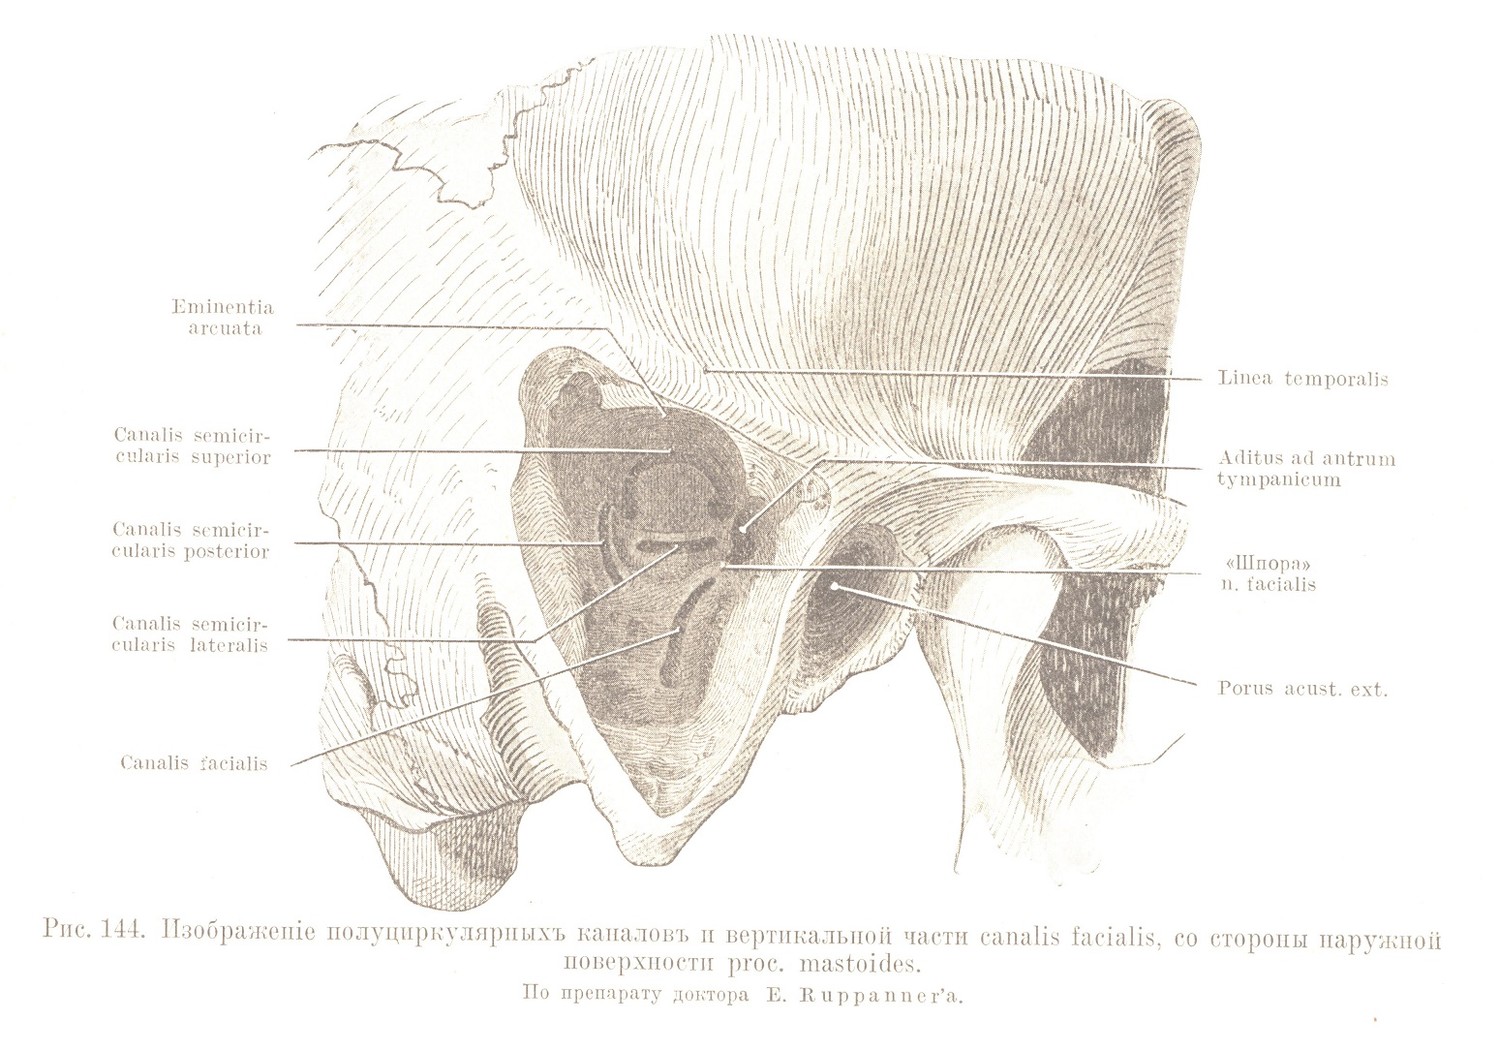 Изображеніе полуциркулярныхъ каналовъ и вертикальной части canalis facialis, со стороны наружной поверхности proc. mastoides. По препарату доктора Е. Ruppanner’a.